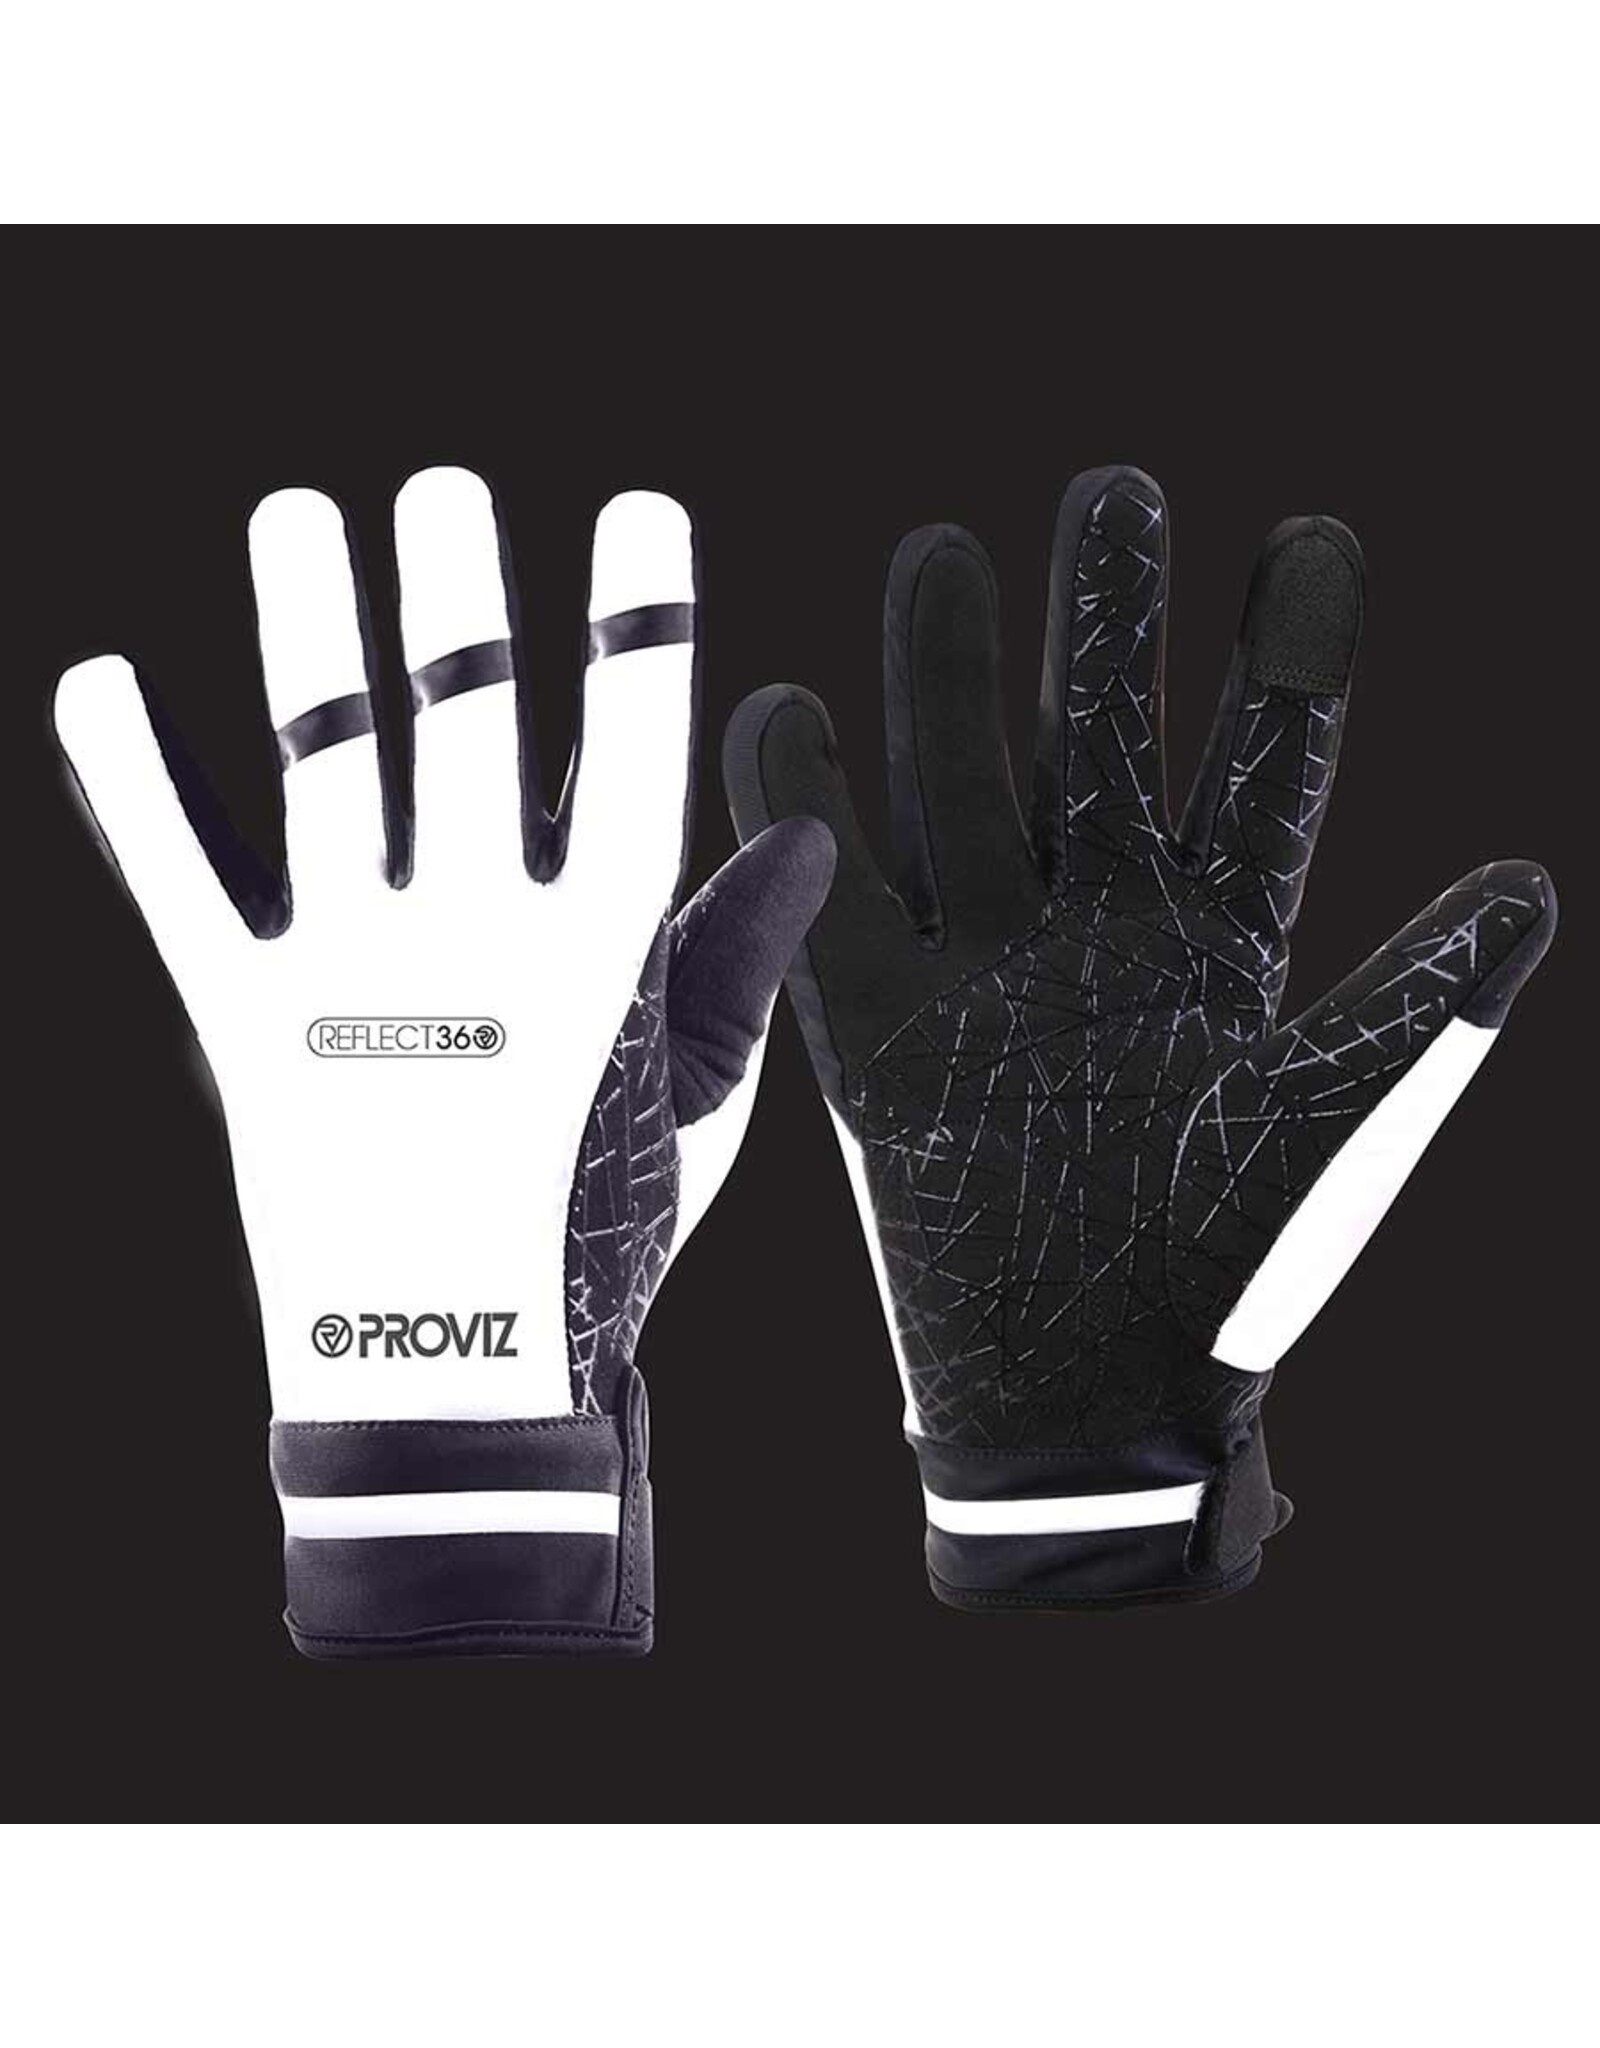 Proviz Proviz Reflect 360 Unisex Winter Gloves